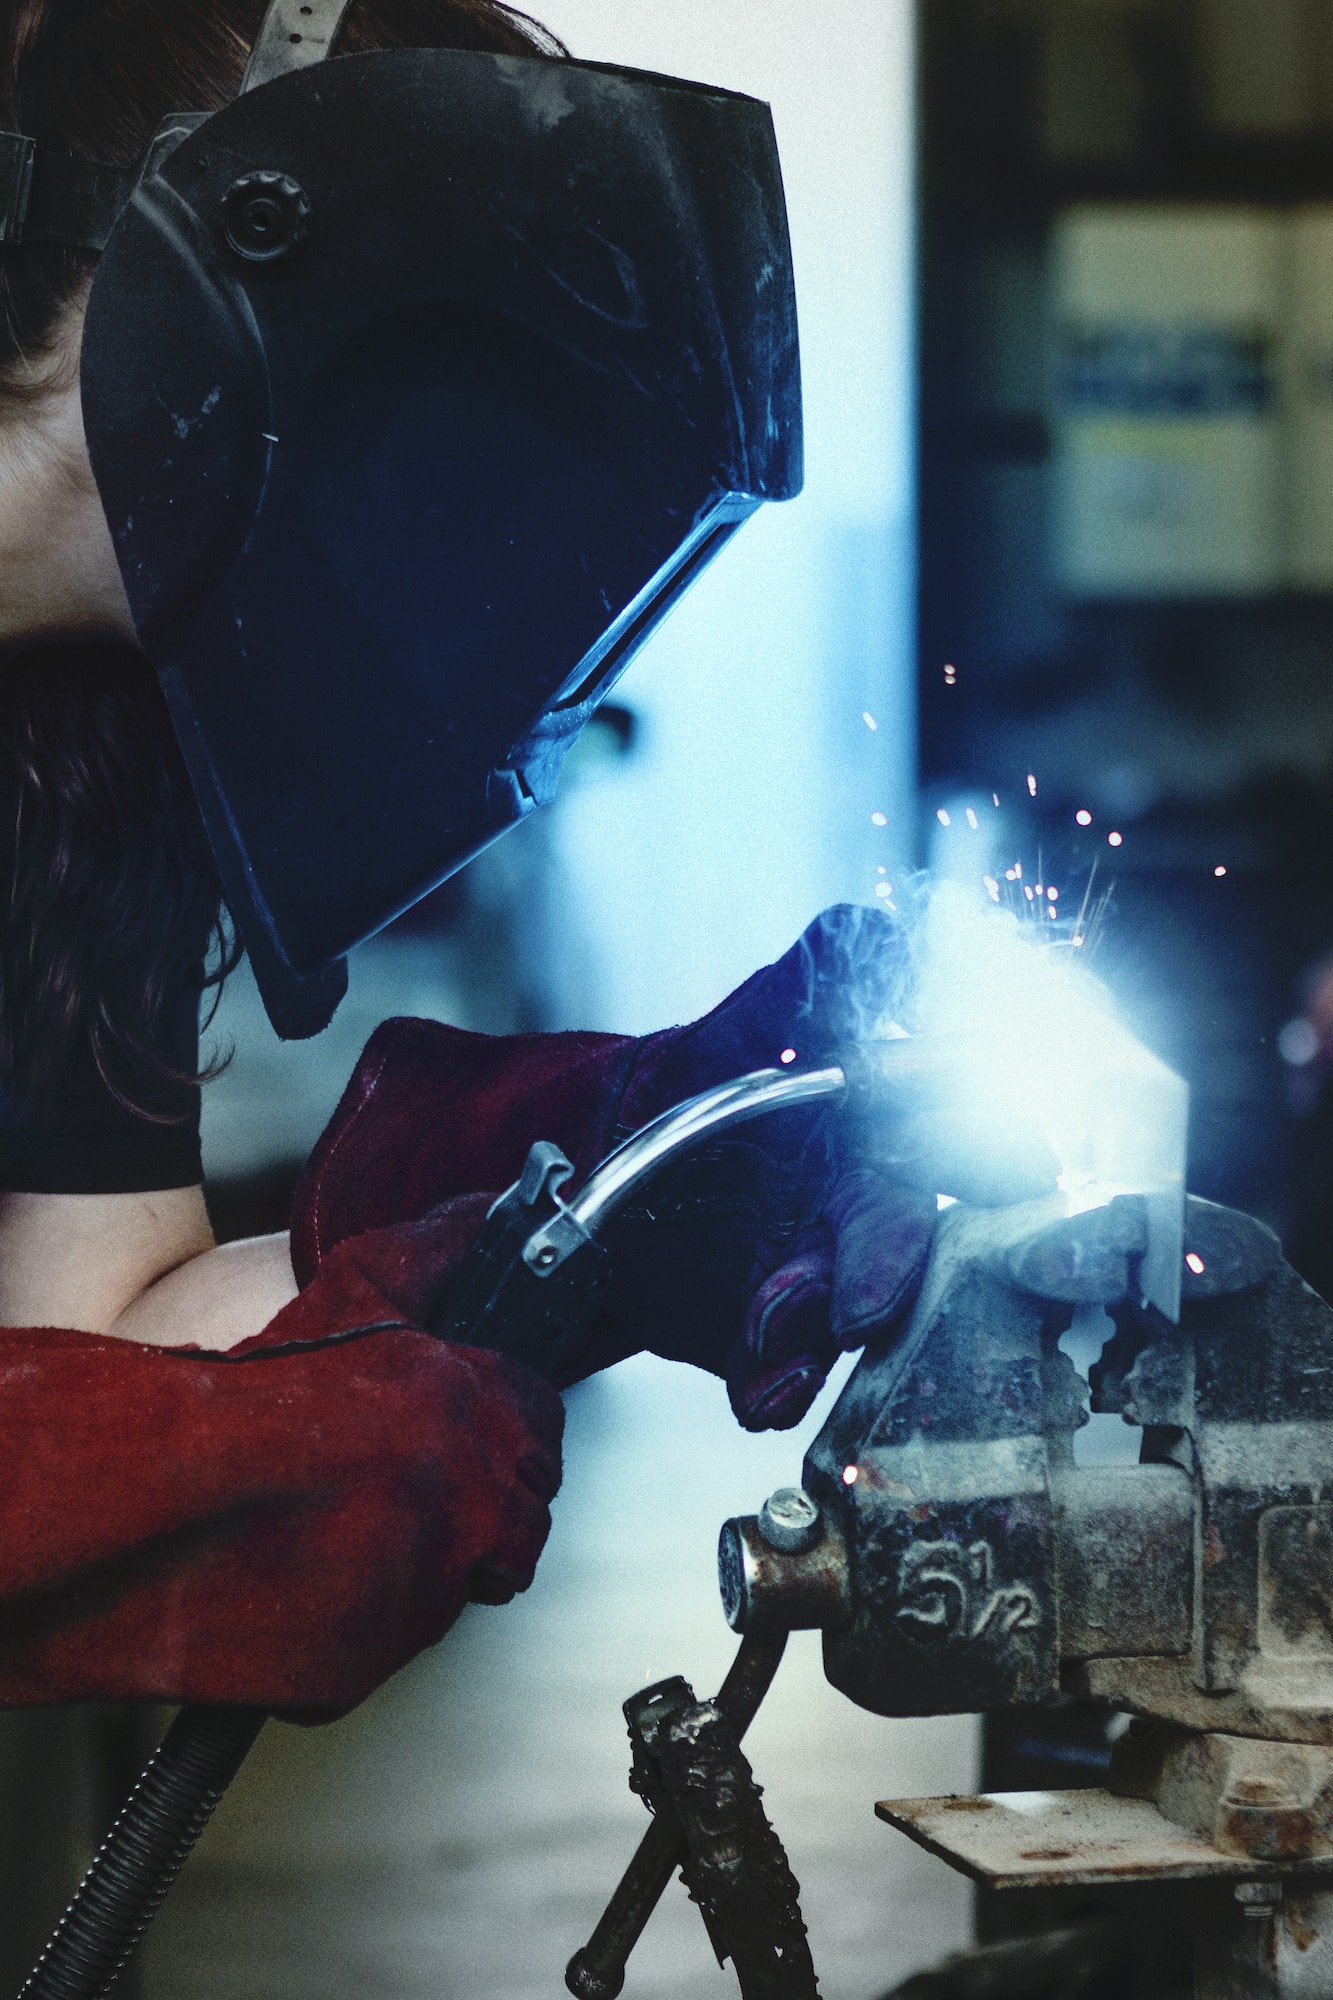 Woman welding metal